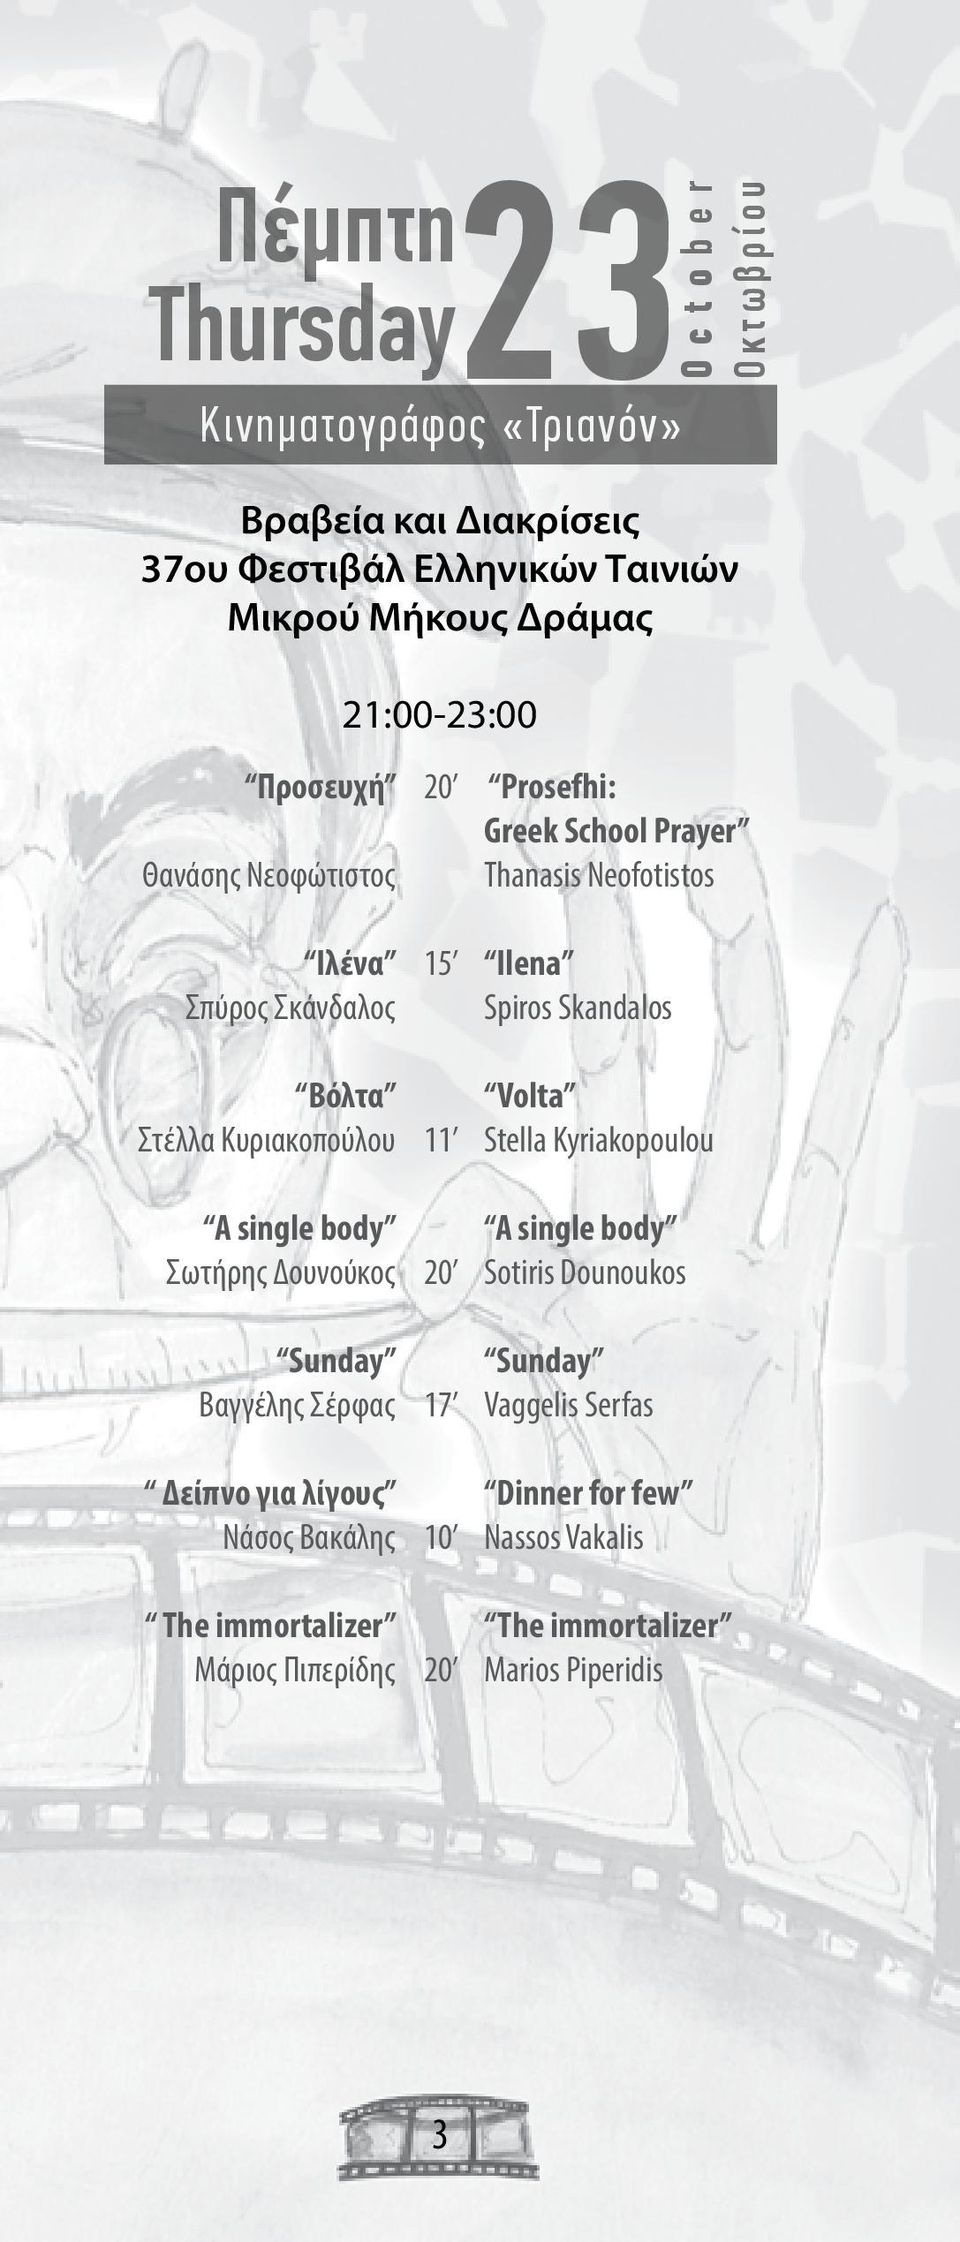 15 11 17 10 Prosefhi: Greek School Prayer Thanasis Neofotistos Ilena Spiros Skandalos Volta Stella Kyriakopoulou A single body